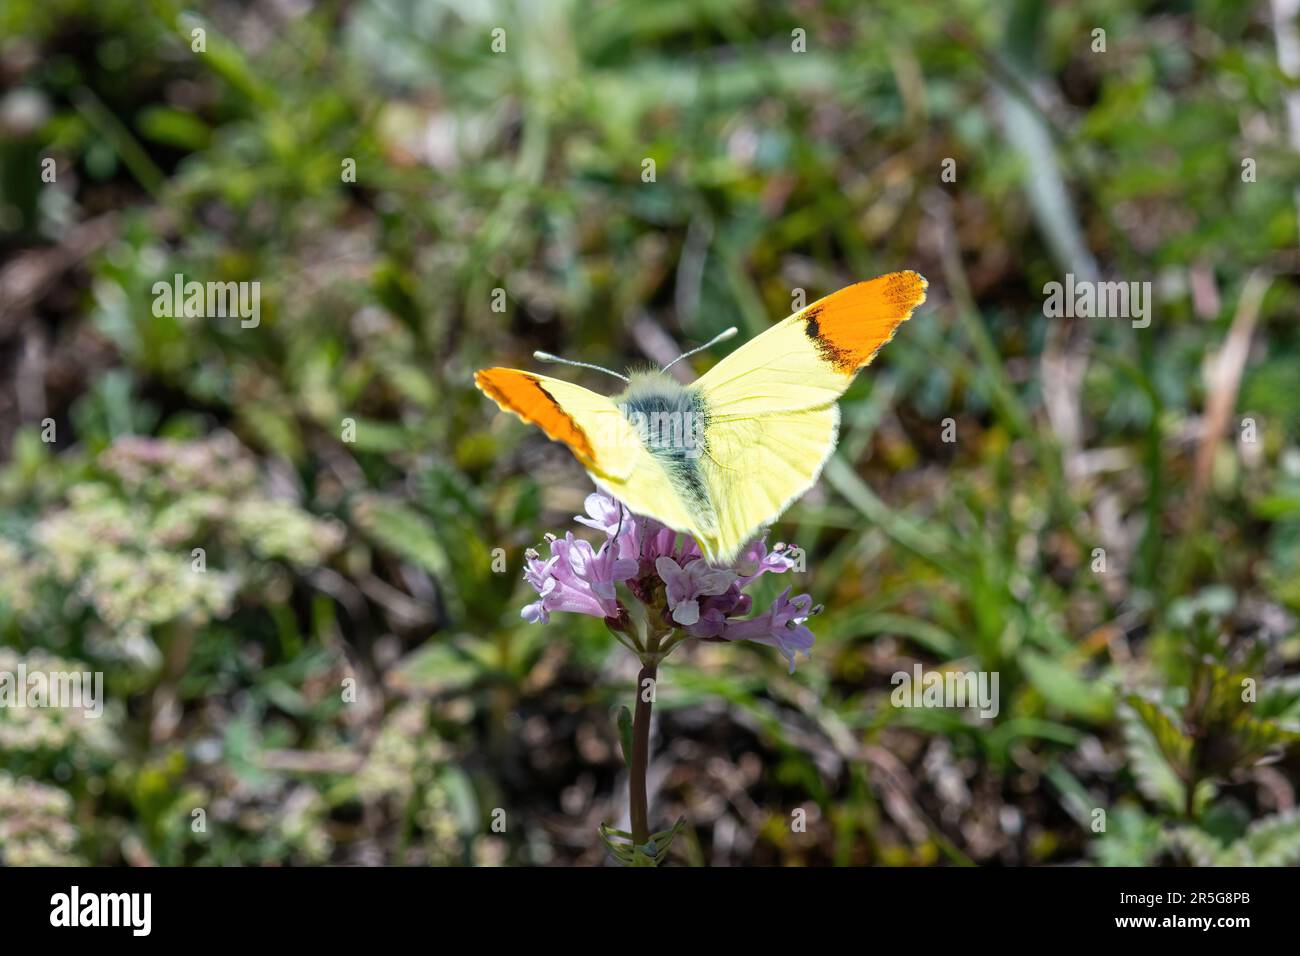 Farfalla con punta arancione della Provenza (Anthocharis euphenoides), un maschio con punta giallo limone e punta con ala arancione in Italia centrale, Europa Foto Stock